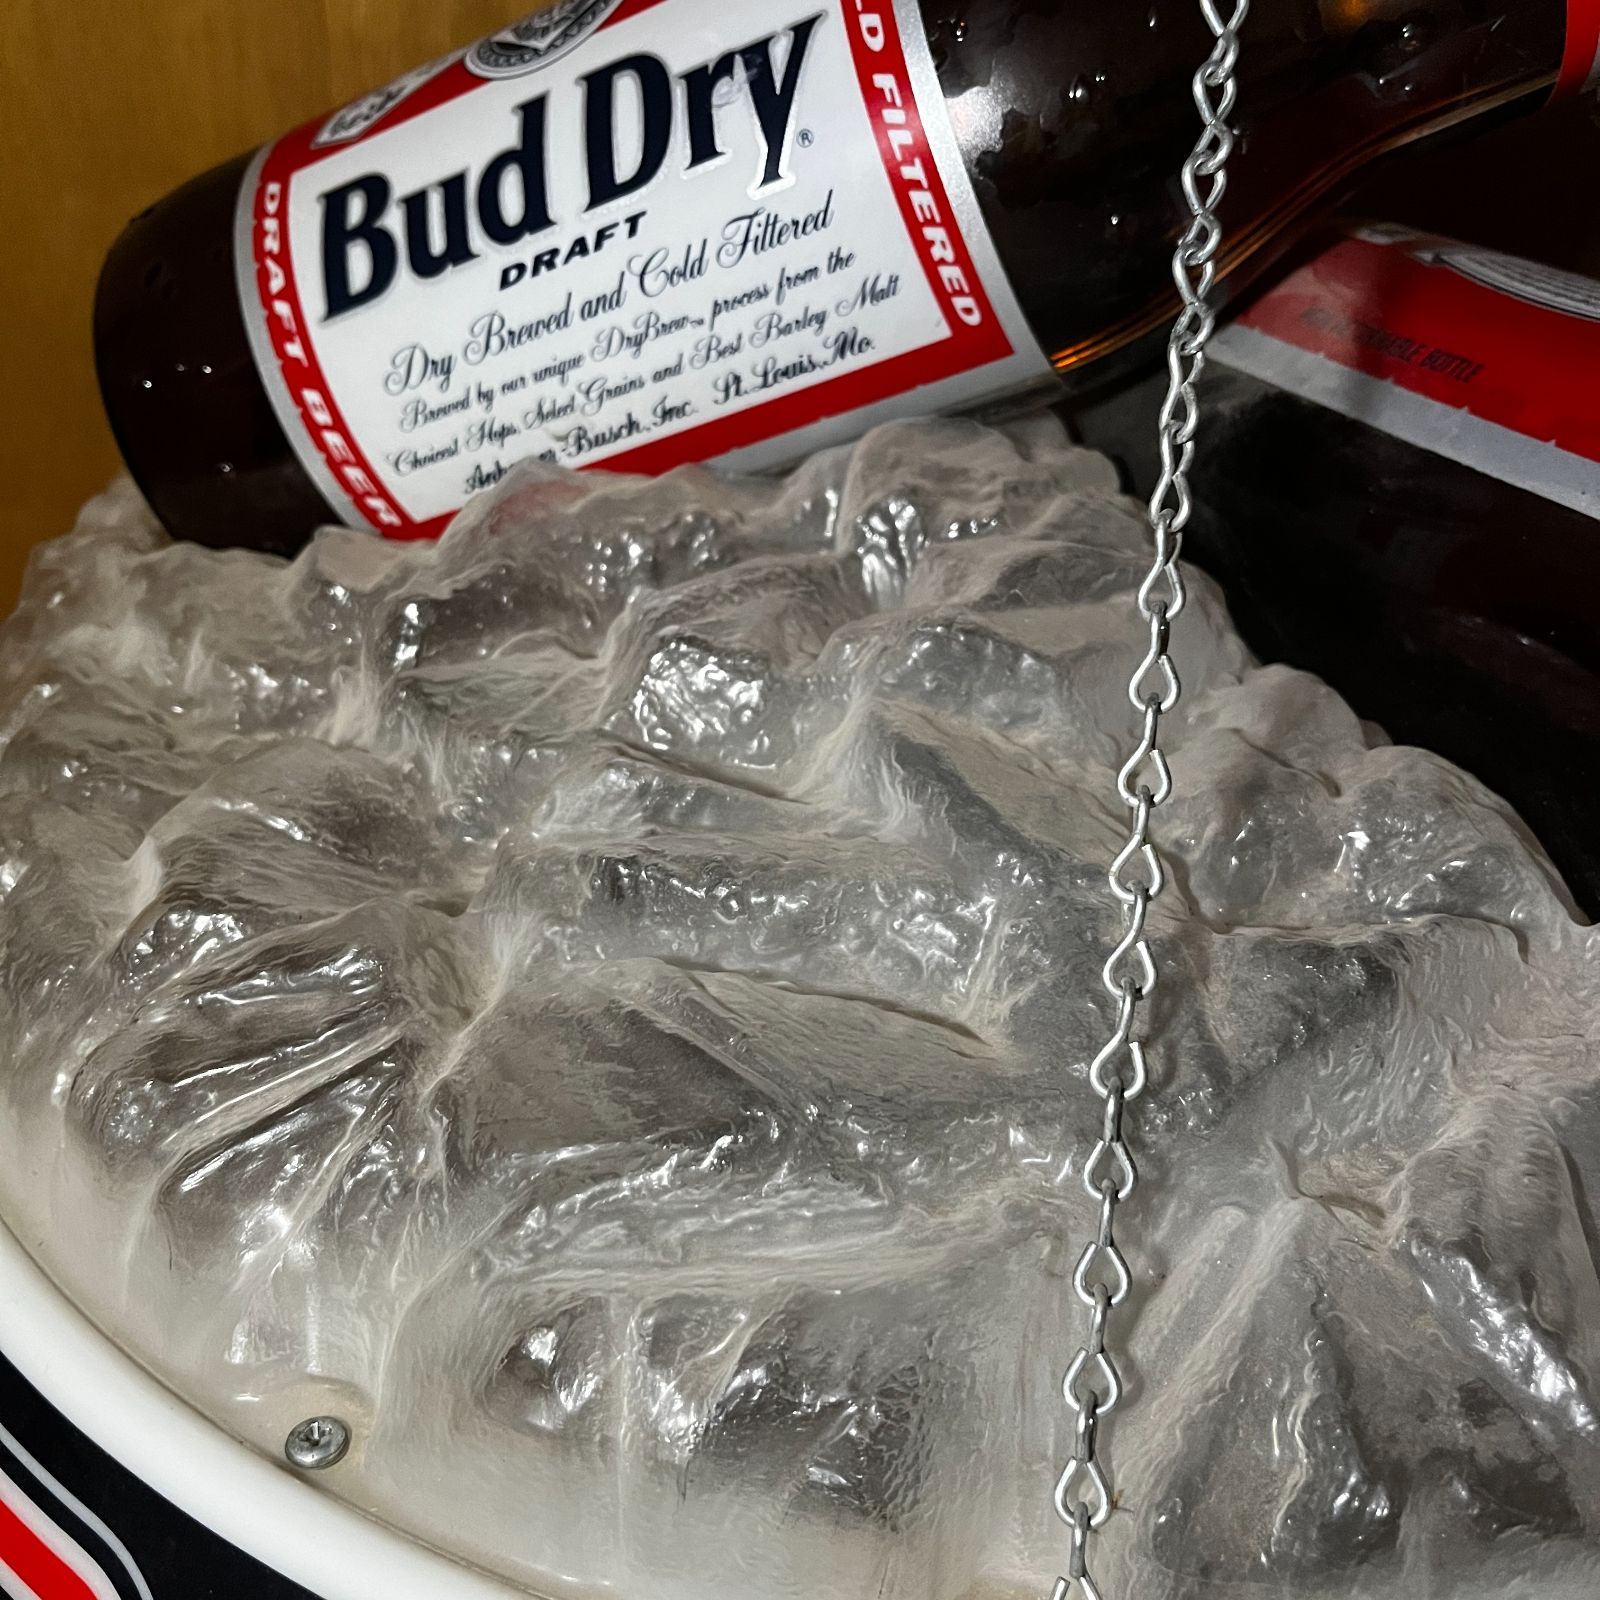 【プールバーライト】 ビンテージ ビリヤードライト プールテーブルライト 1990s Bud Dry